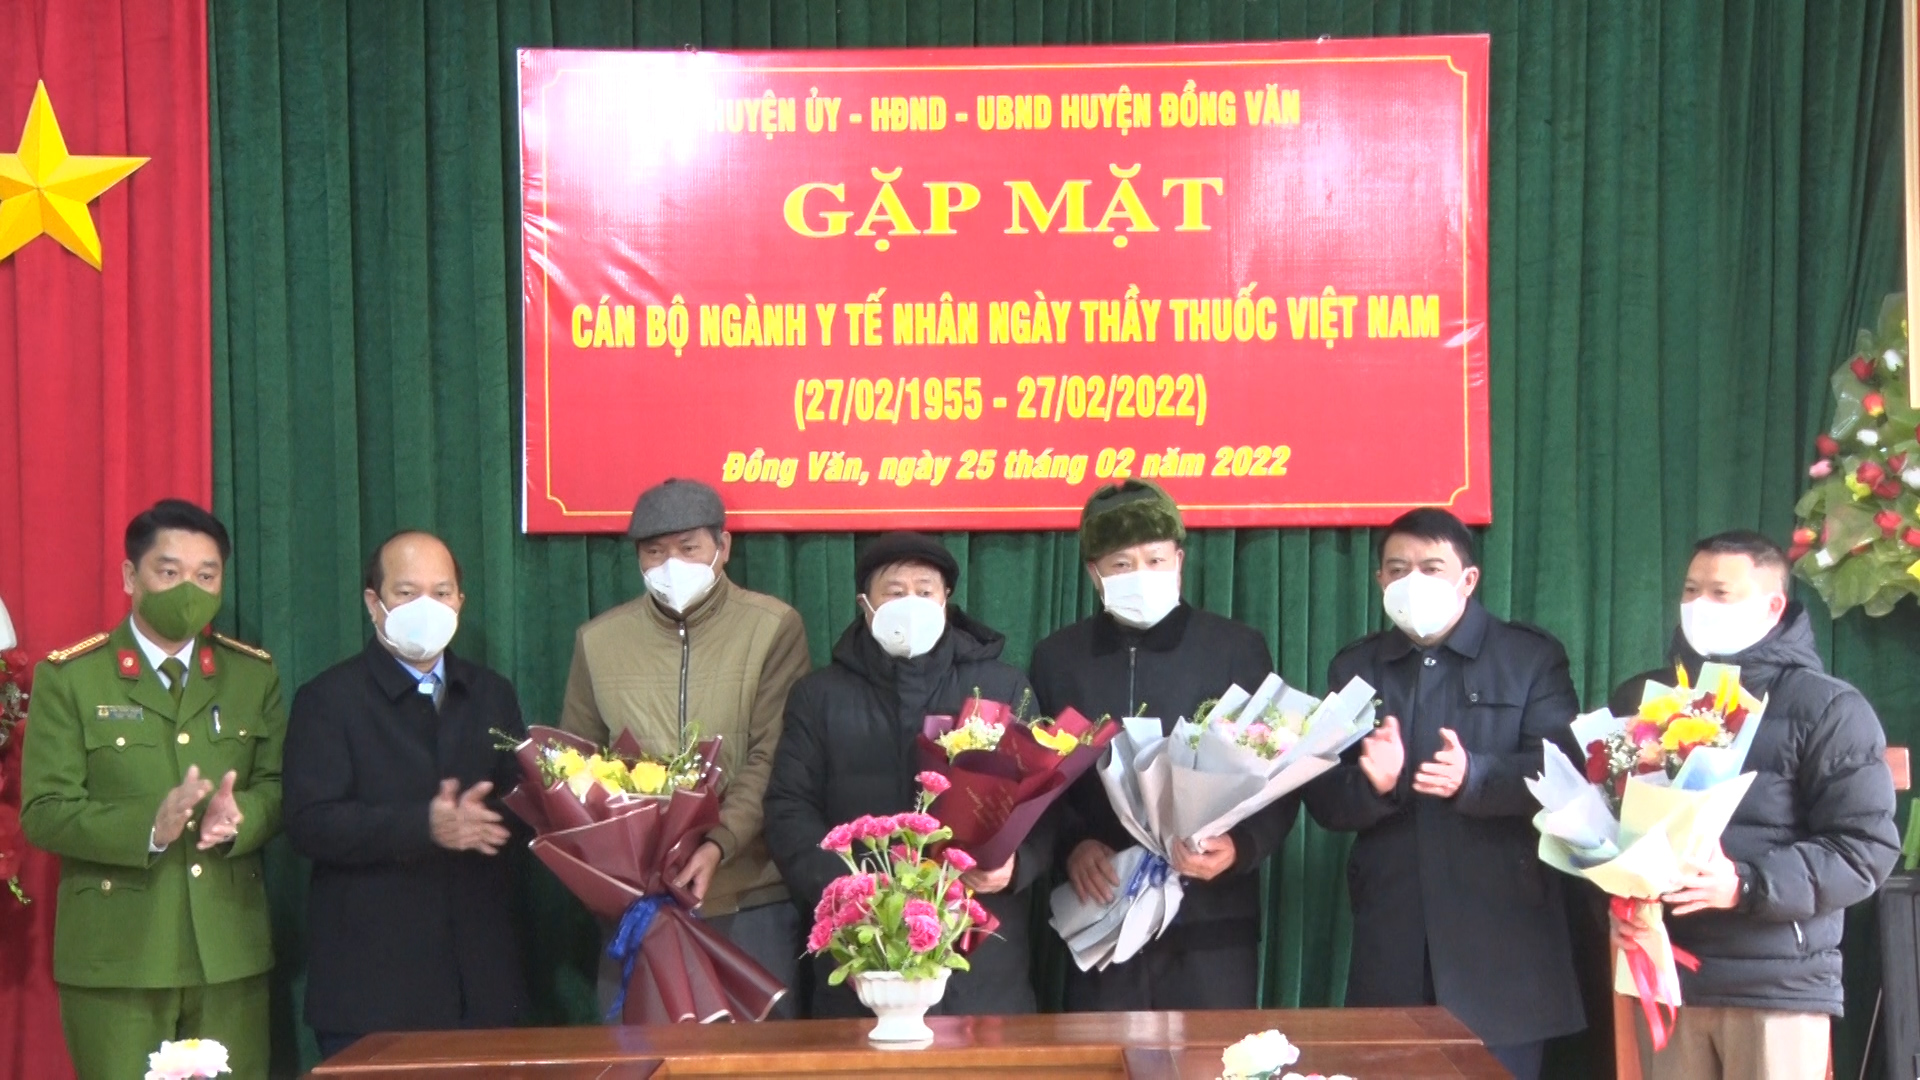 Lãnh đạo huyện Đồng Văn gặp mặt và chúc mừng các cán bộ ngành Y tế nhân dịp ngày thầy thuốc Việt nam